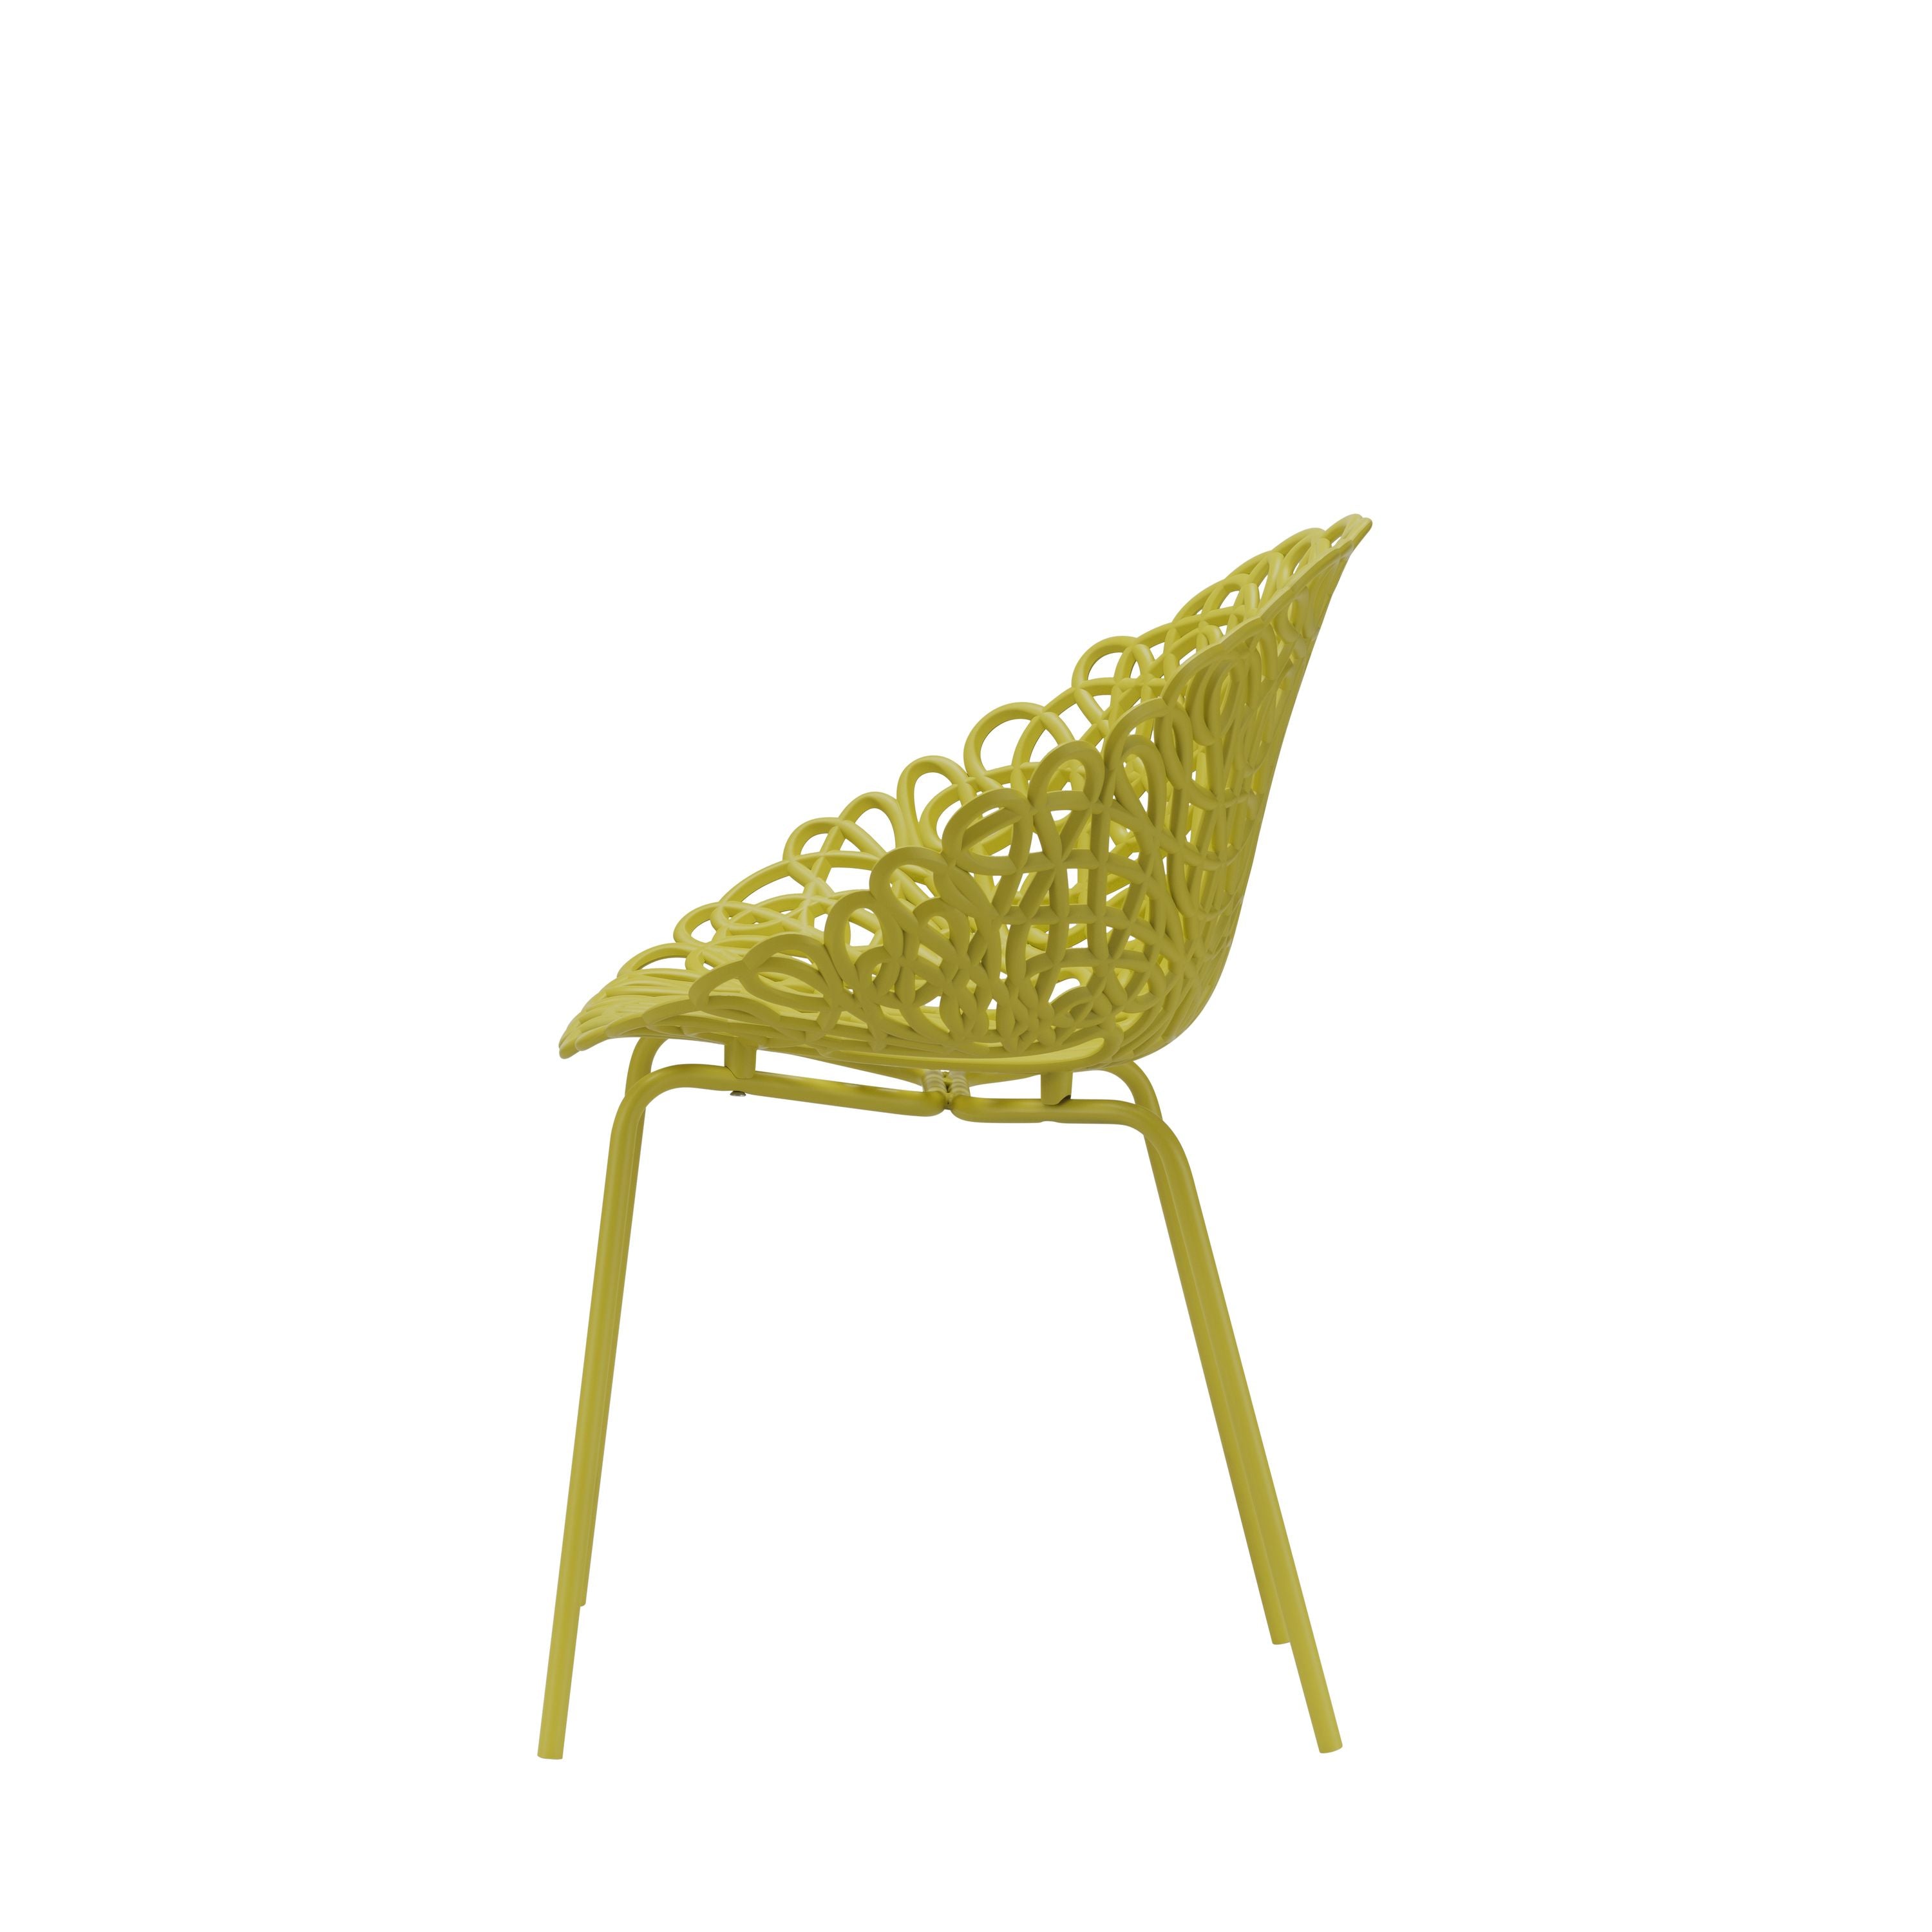 Qeeboo Bacana Chair Indoor Set Of 2 Pcs, Mustard